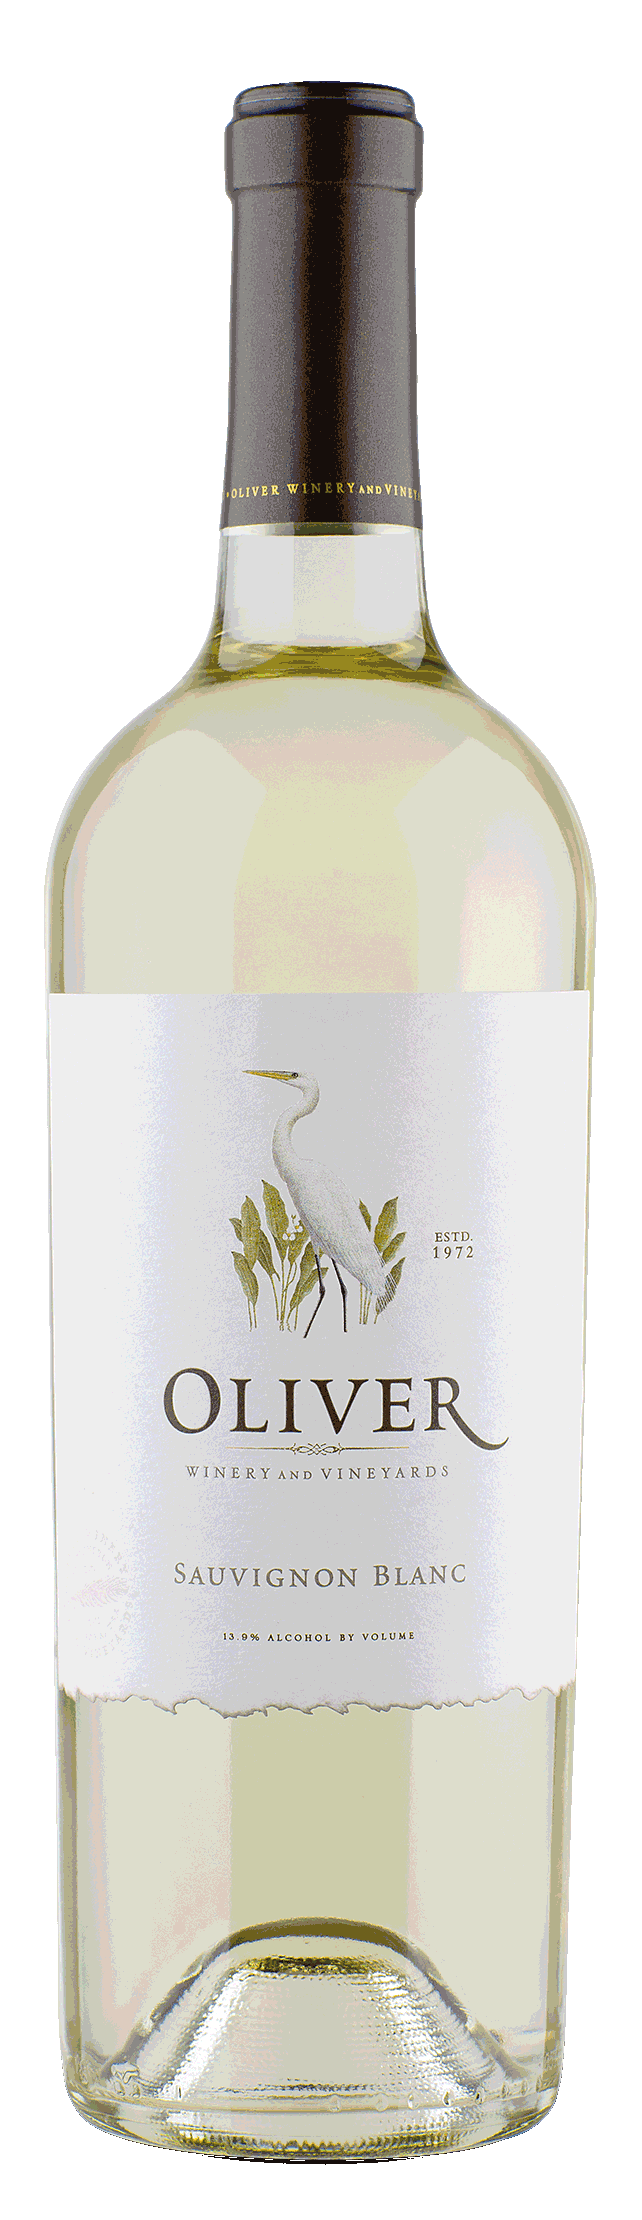 Oliver Sauvignon Blanc - A Citrusy, Dry White